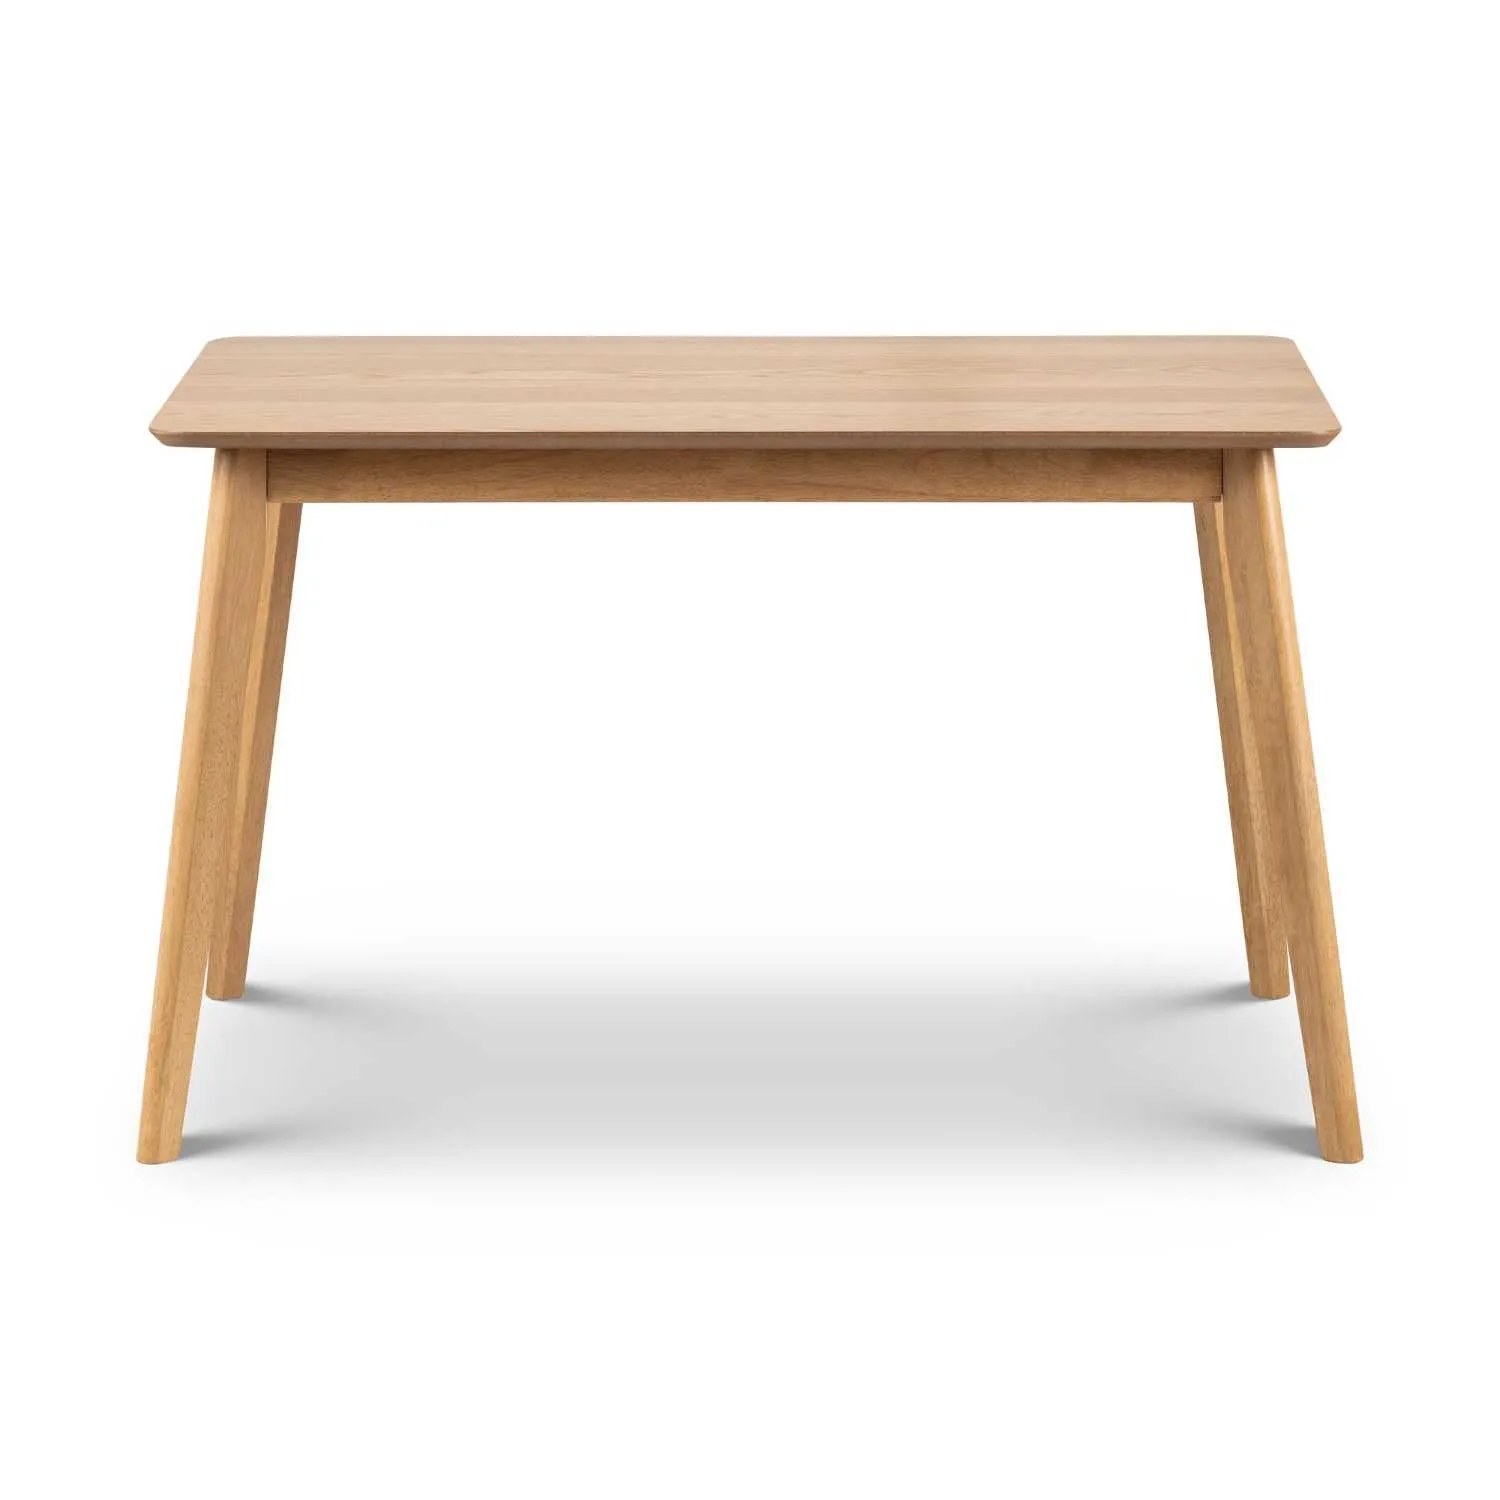 Boden Oak Veneer Rectangular Table With Tapered Legs